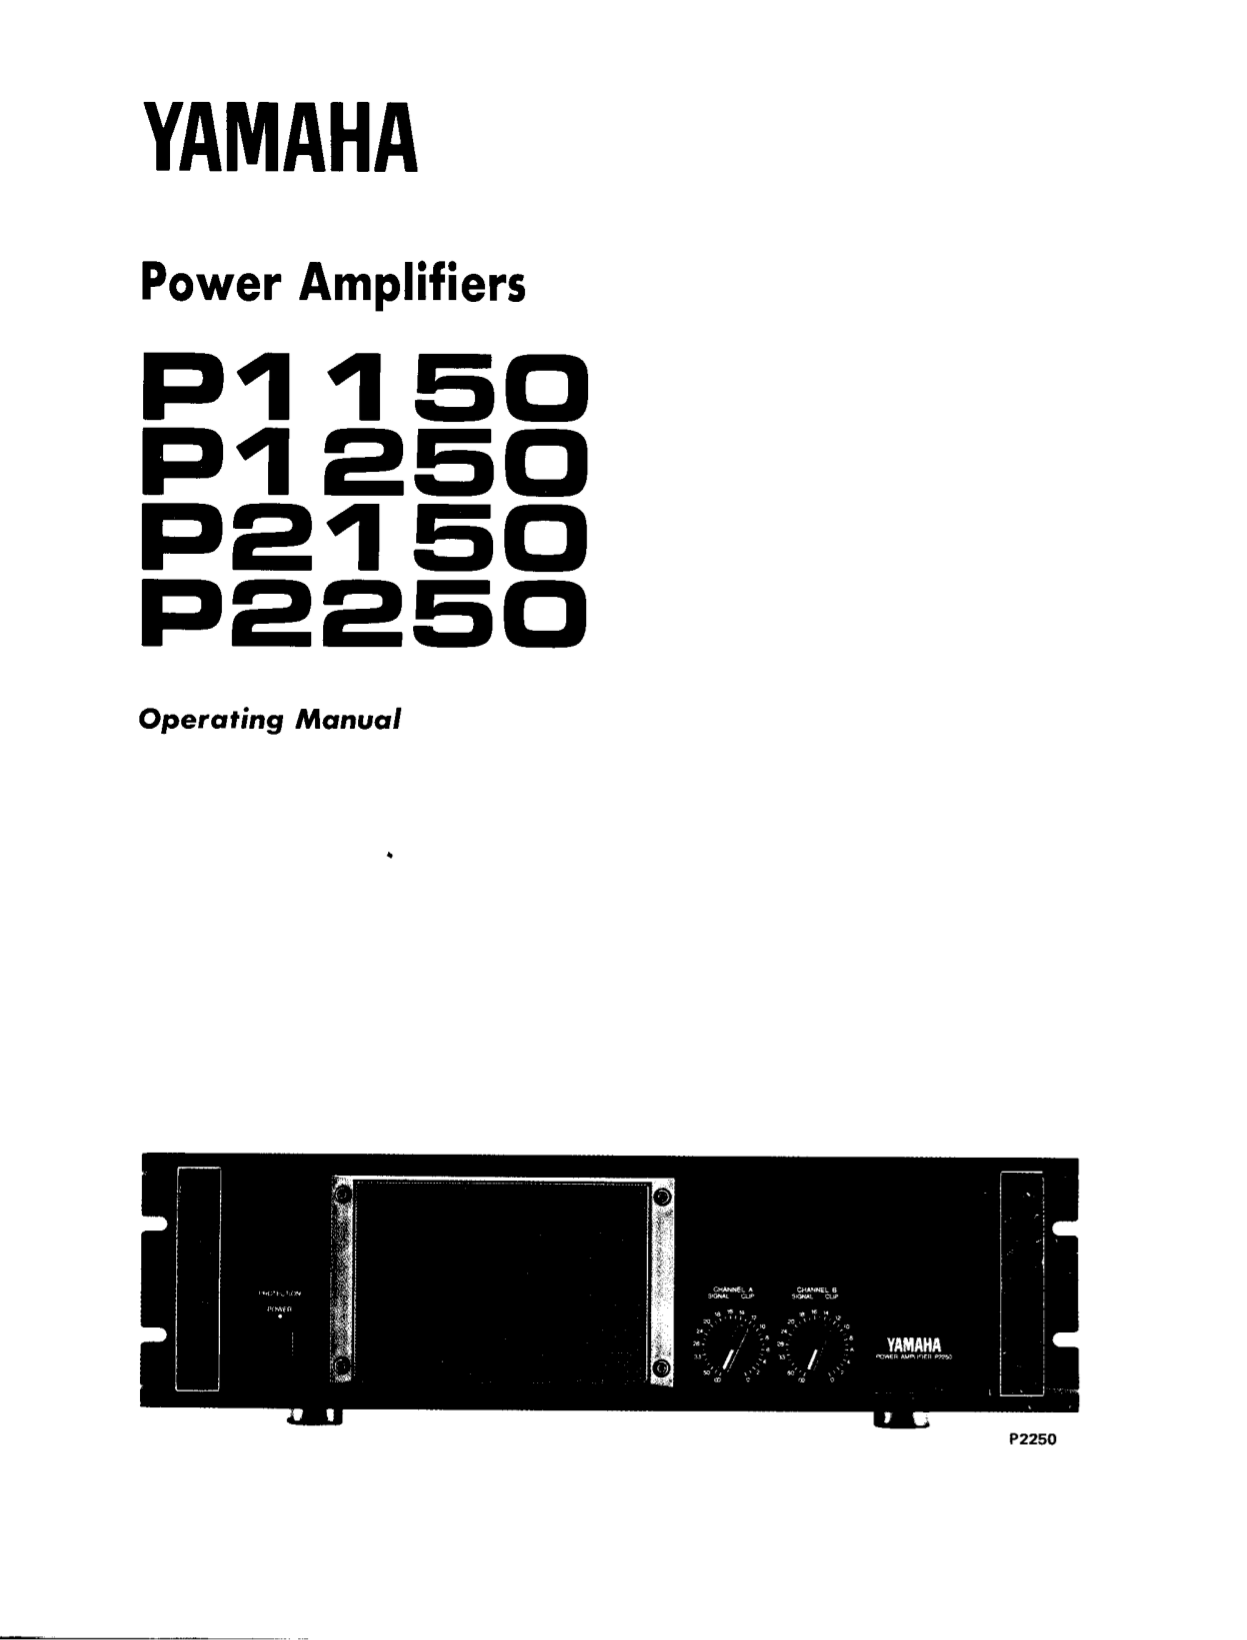 Download free pdf for Yamaha P1150 Amp manual